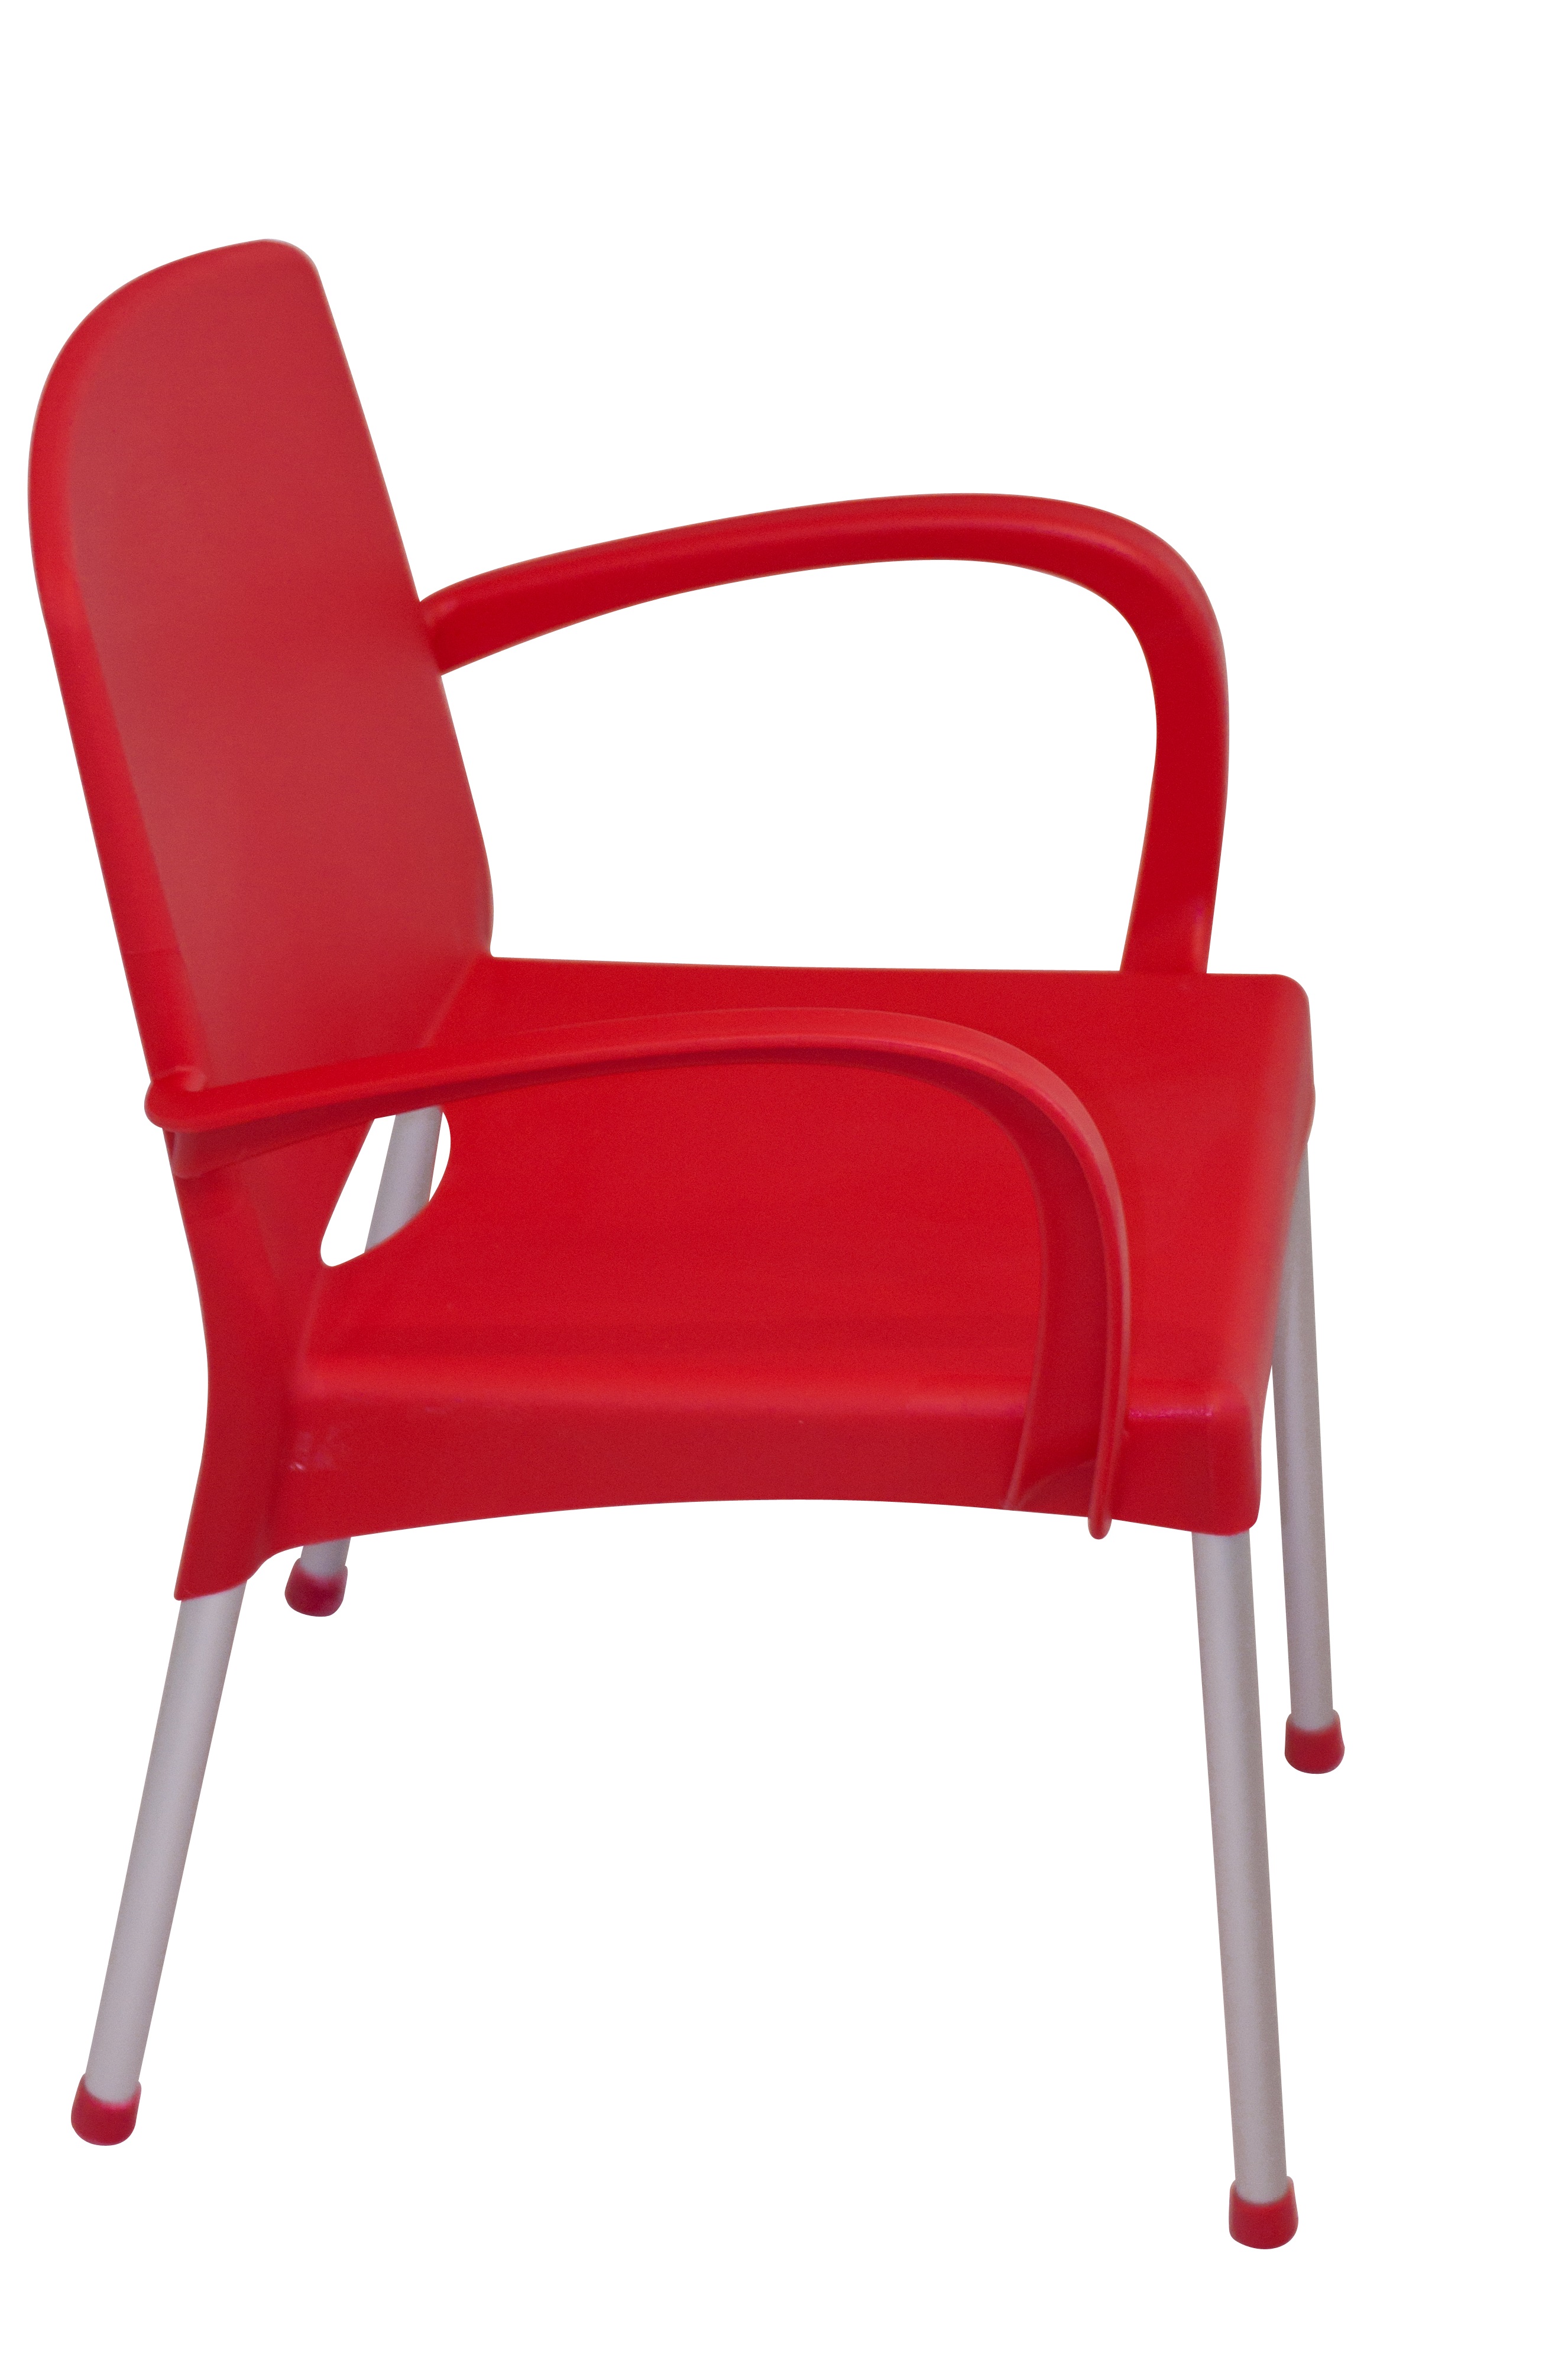 Пластиковые кресла офисные. Стул Chair gp323. Стул пластиковый красный. Красный пластмассовый стул. Пластмассовые стулья.